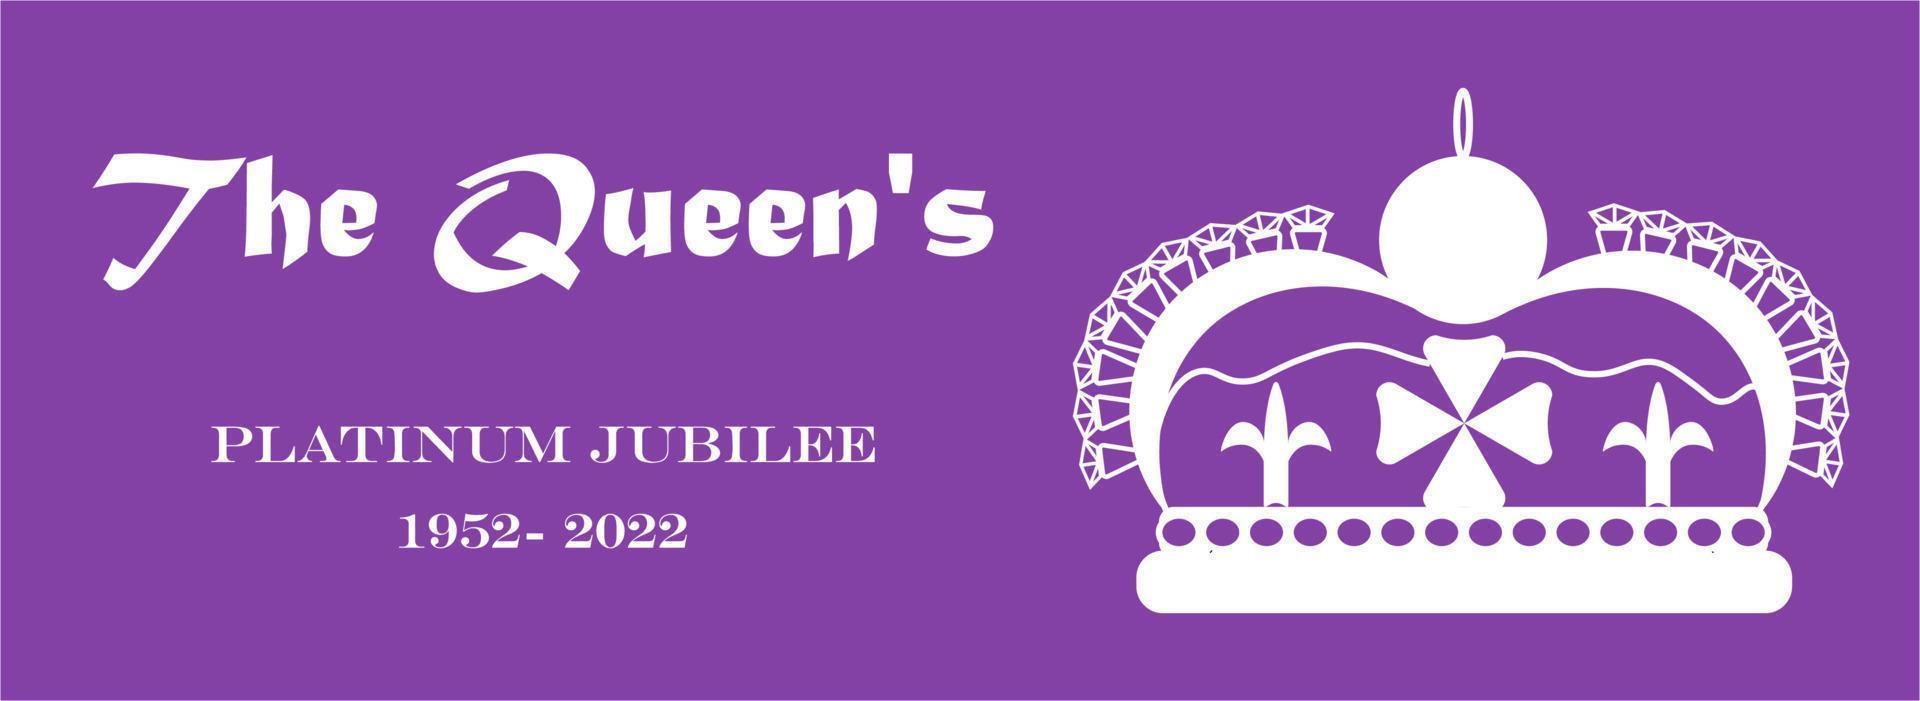 banner o jubileu de platina das rainhas, 1952-2022. ilustração vetorial da coroa de cerca de 70 anos de serviço. design, capas, adesivos, redes sociais, medalhas, crachás, flyers, postais, cartazes. vetor